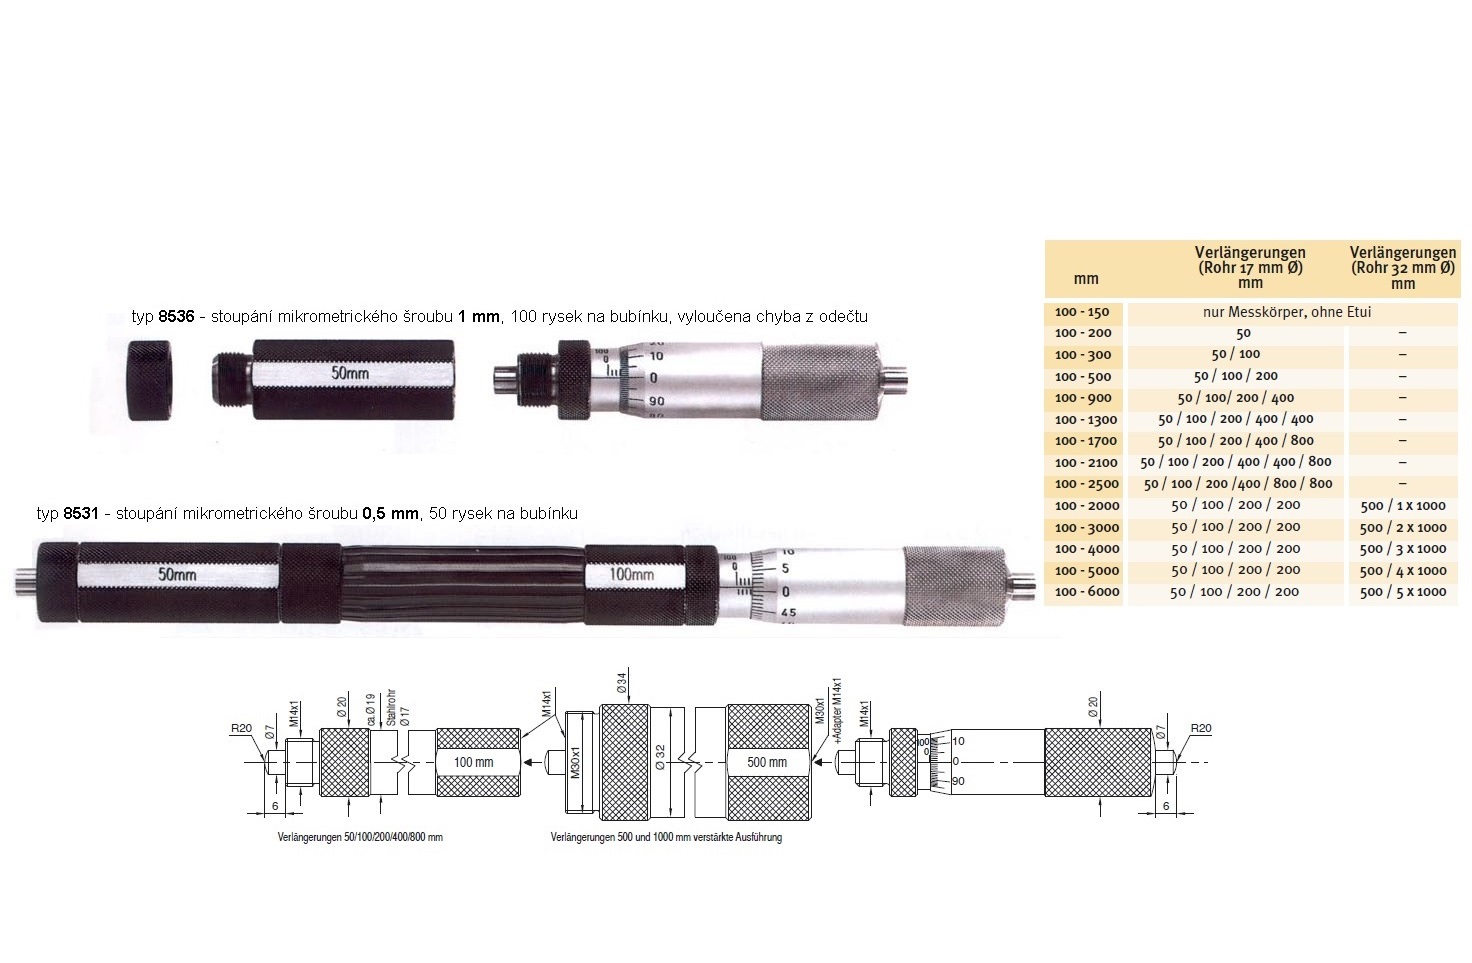 Mikrometrický odpich skládací HARTIG 100-200 mm, stoupání šroubu 1 mm, doteky tvrdokov